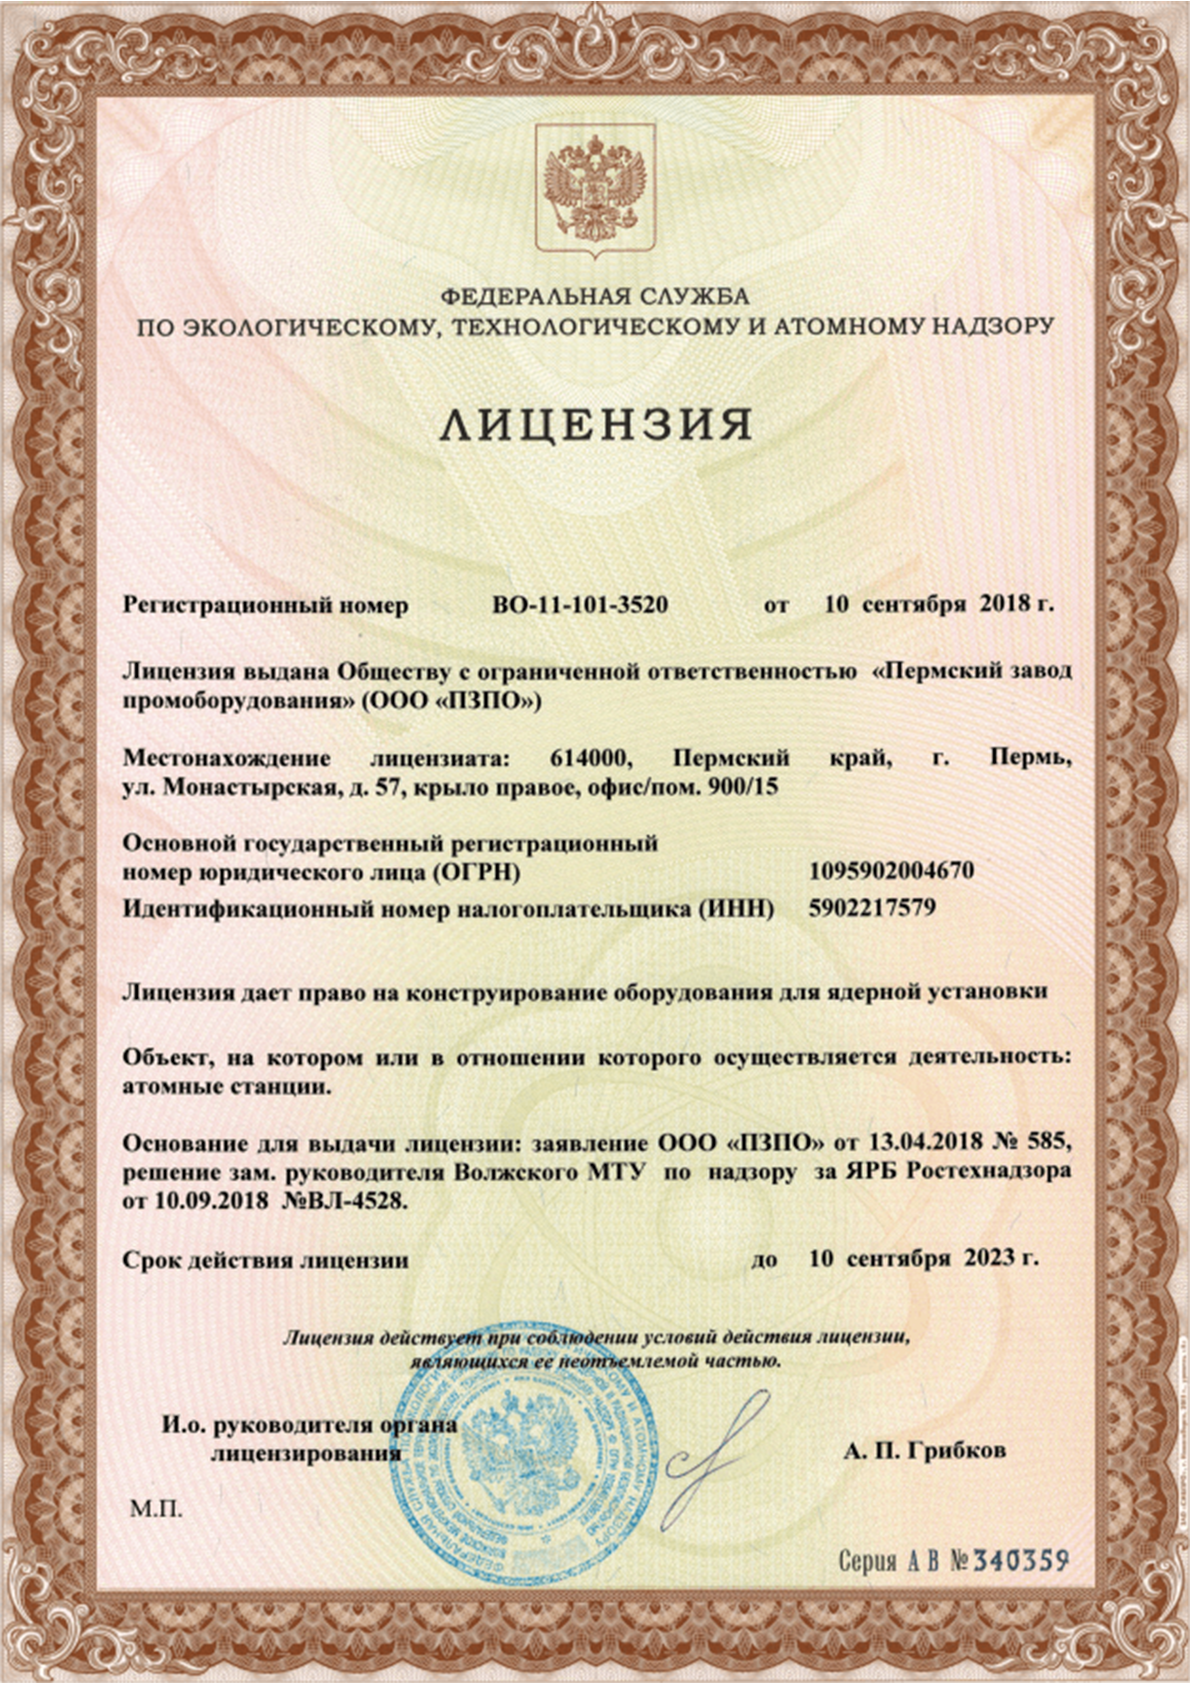 Лицензия на право конструирование оборудования для ядерной установки